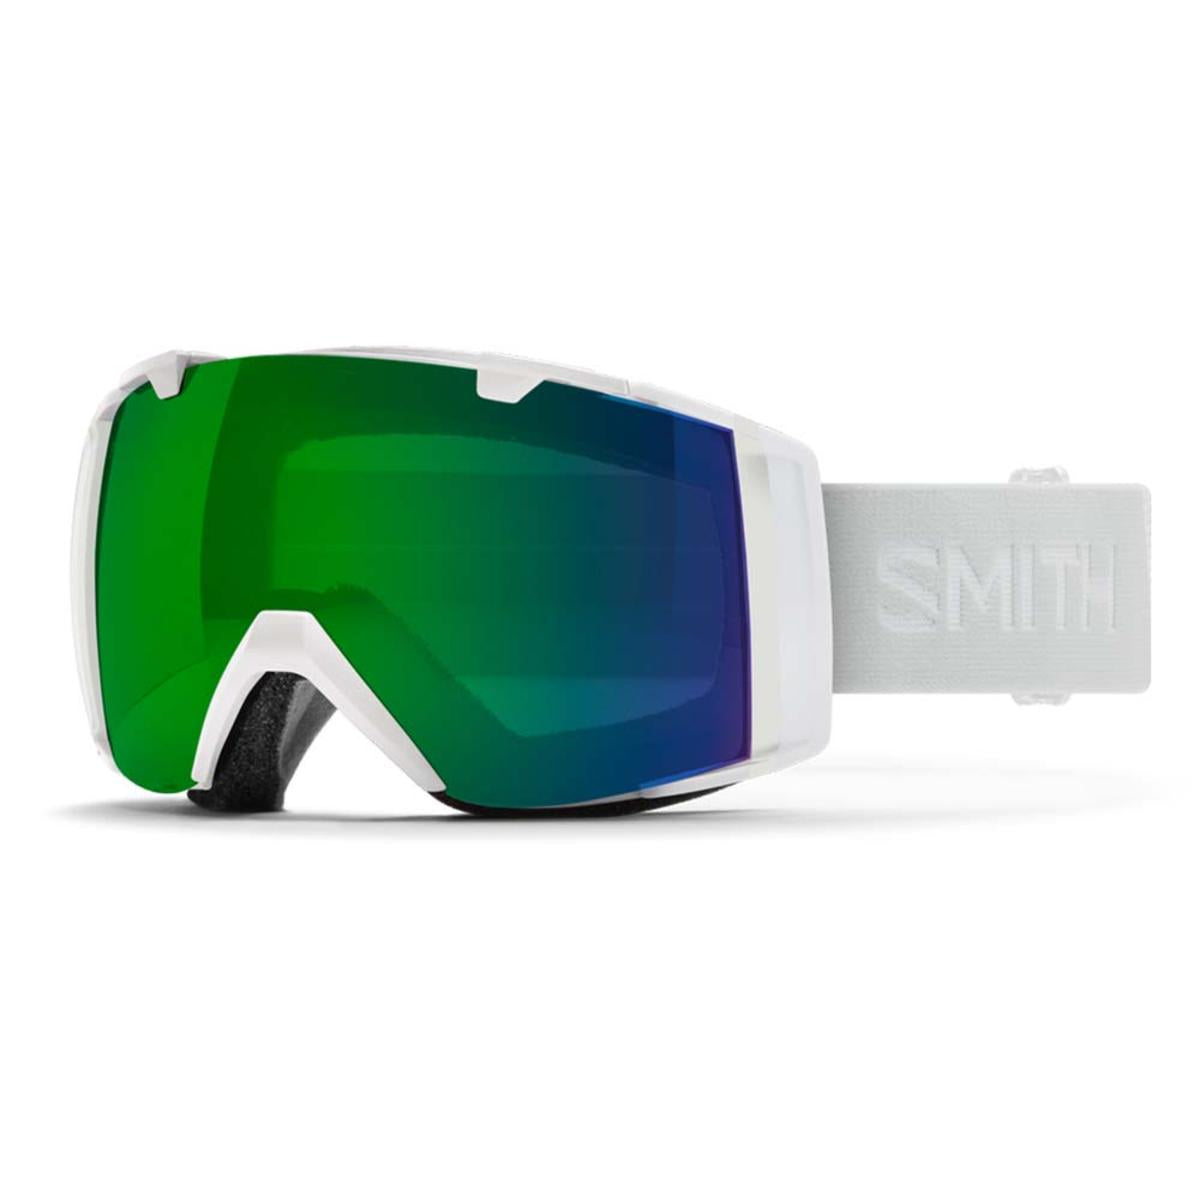 Smith Optics I/O Goggles Chromapop Everyday Green Mirror - White Vapor Frame